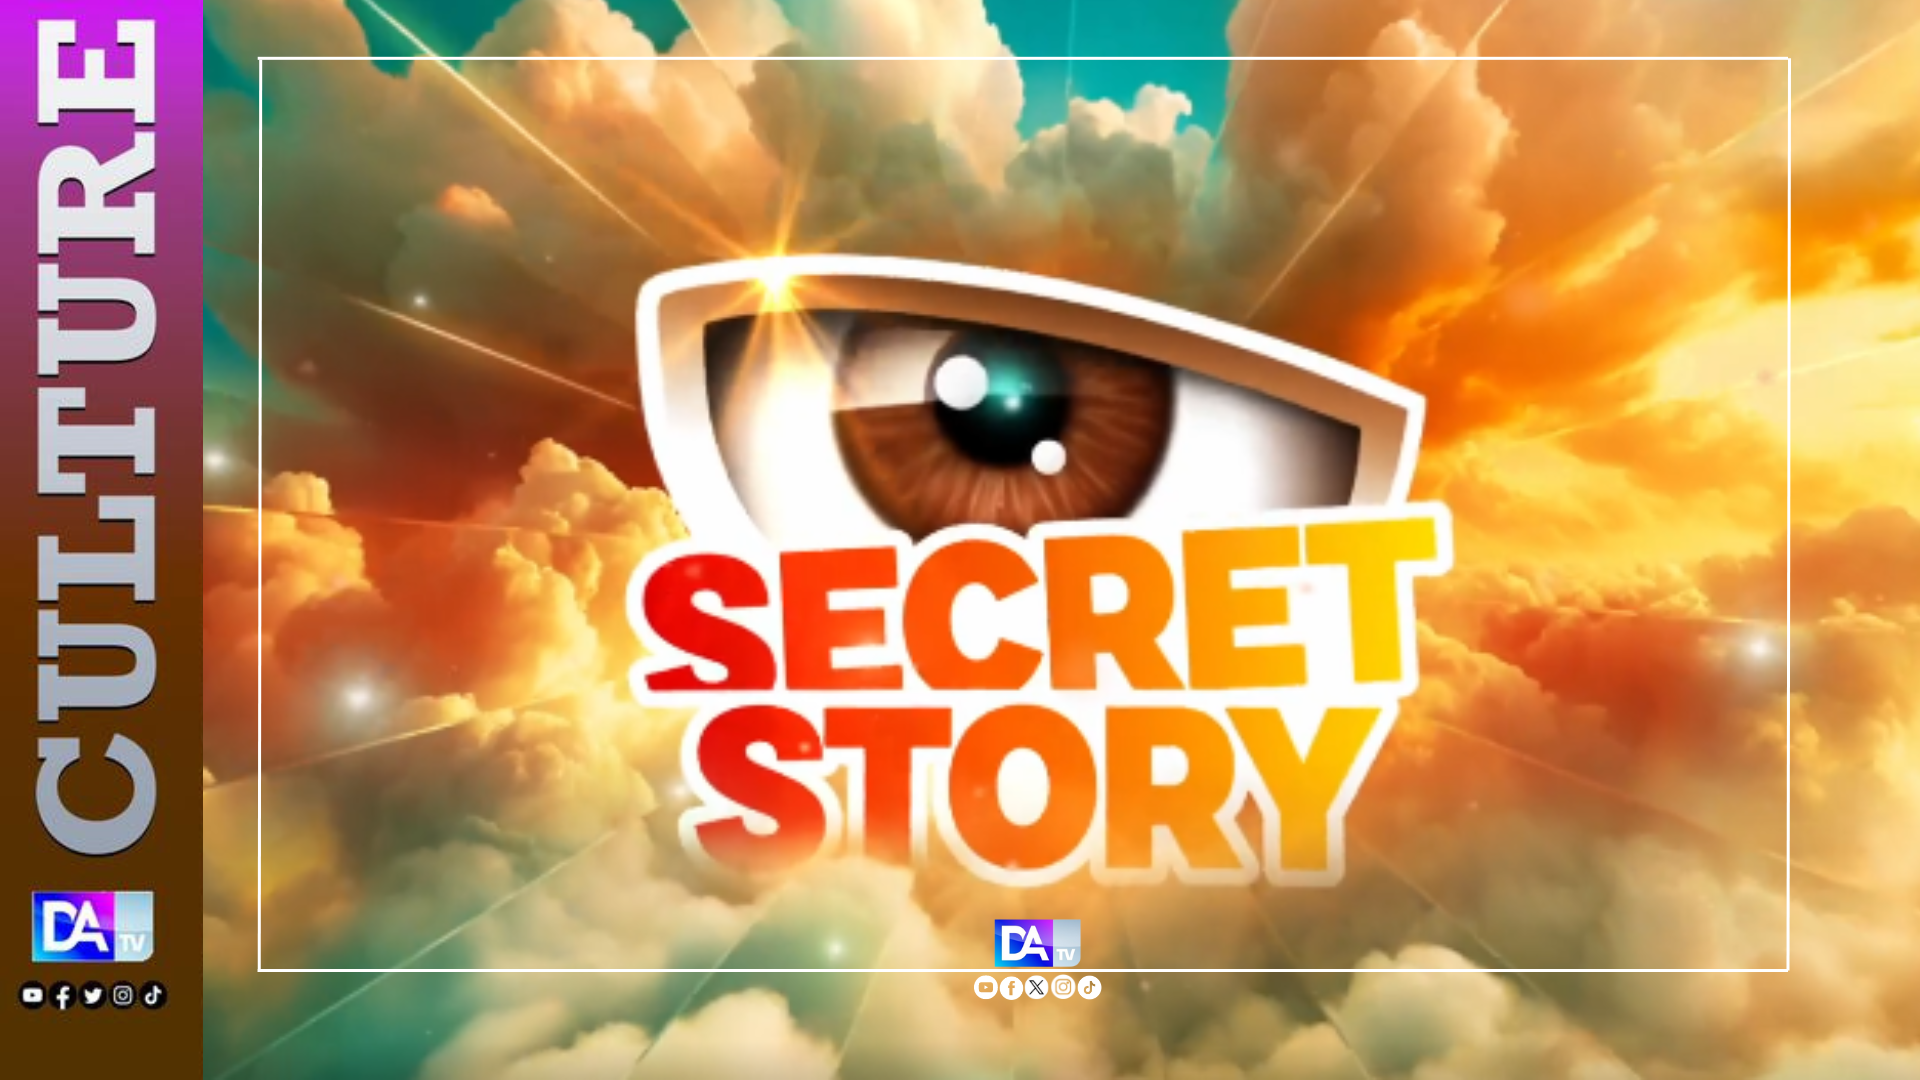 [CULTURE] Secret Story tente sa chance en Afrique